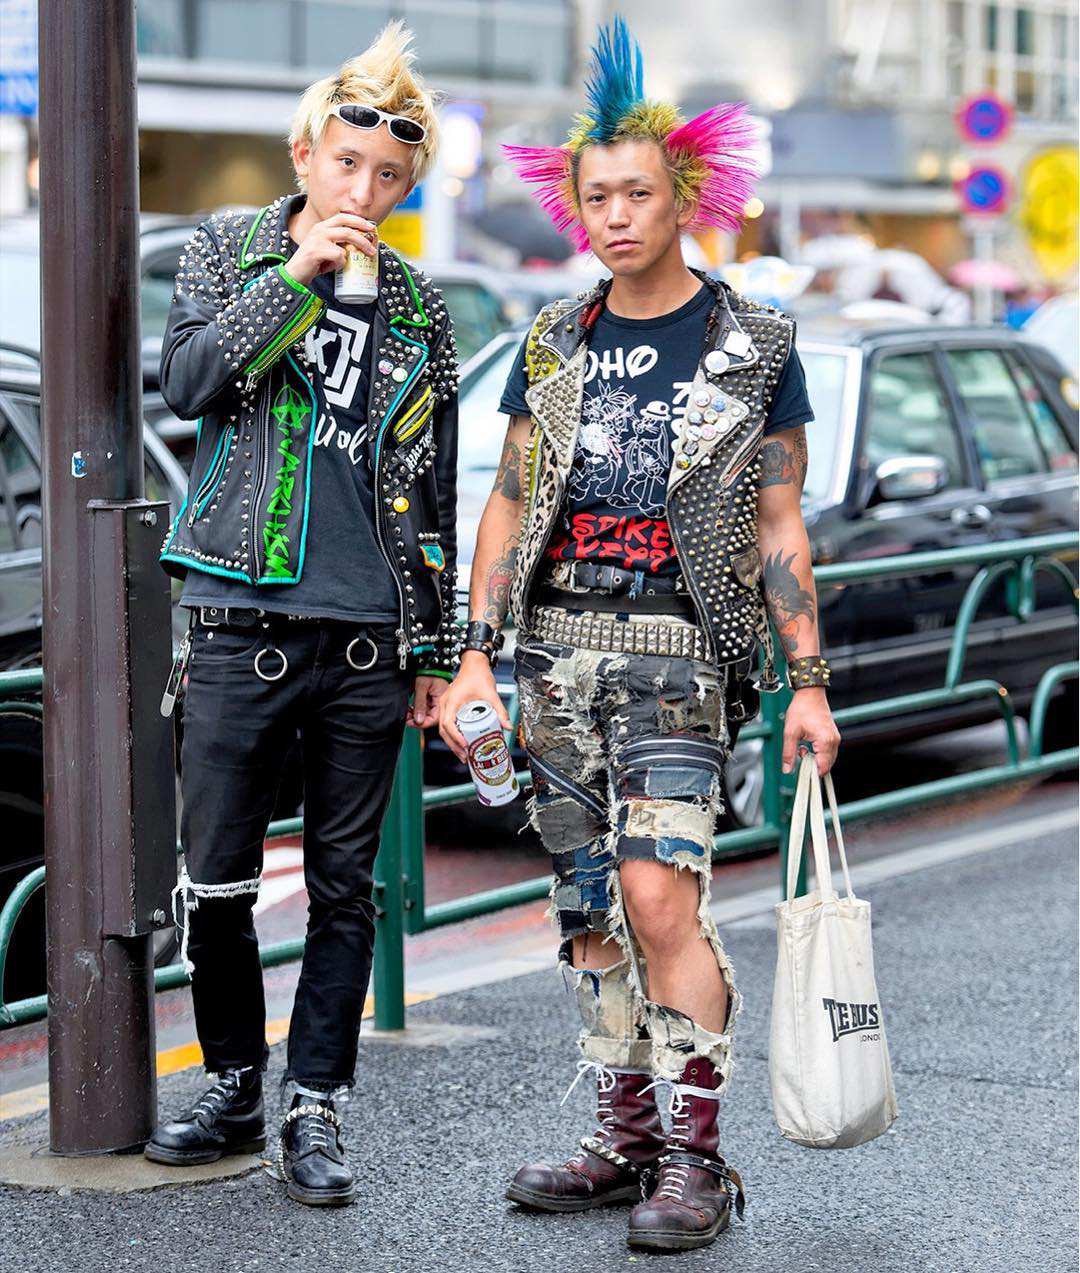 Tín đồ của văn hóa punk trên đường phố Tokyo